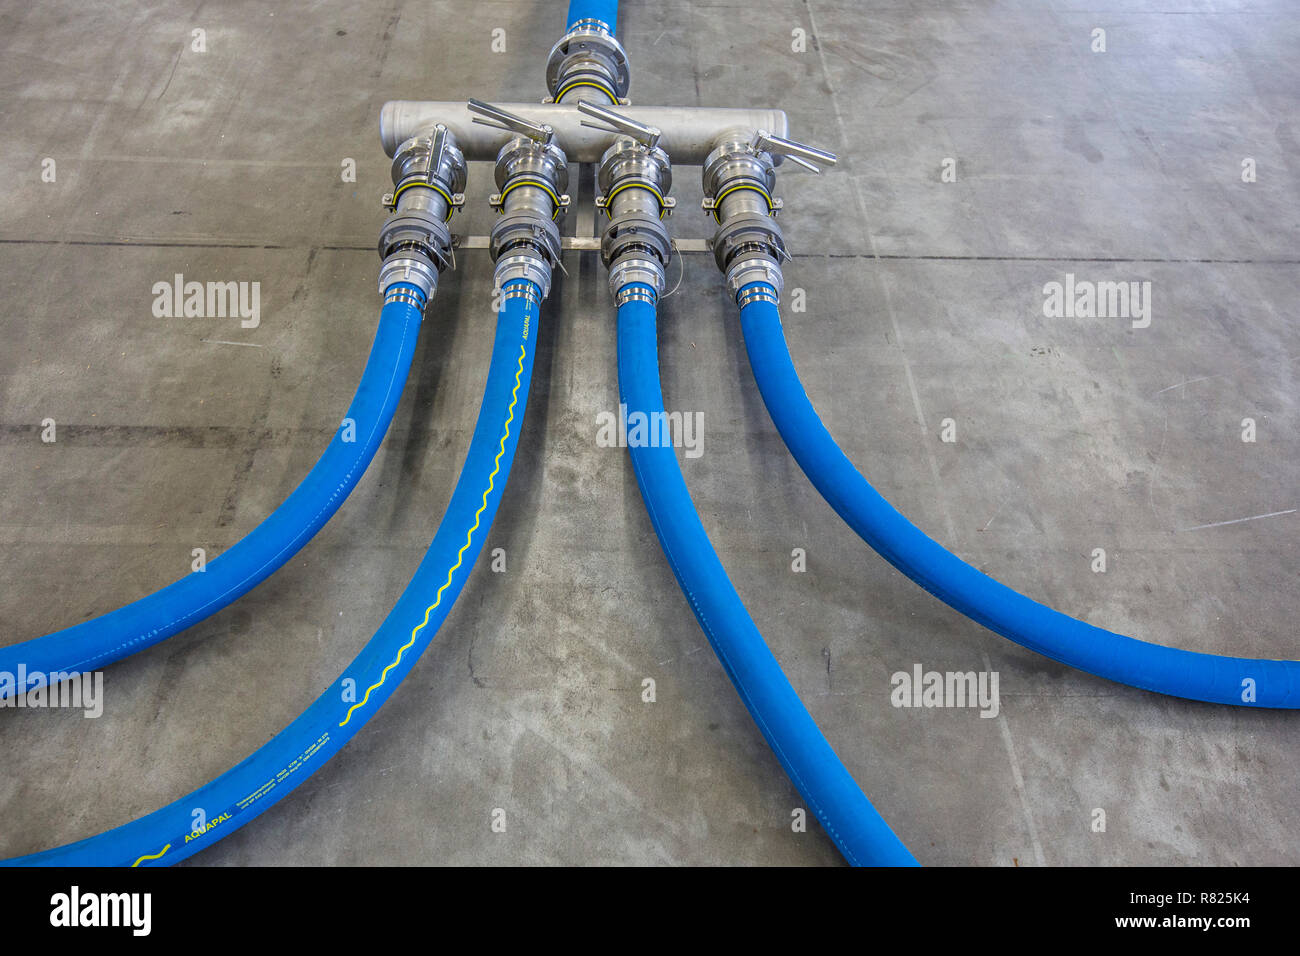 Rohrleitungen für die Verteilung des behandelten Wassers, Trinkwasseraufbereitungsanlage des THW, der Föderalen Agentur für Technische Hilfe, Stockfoto